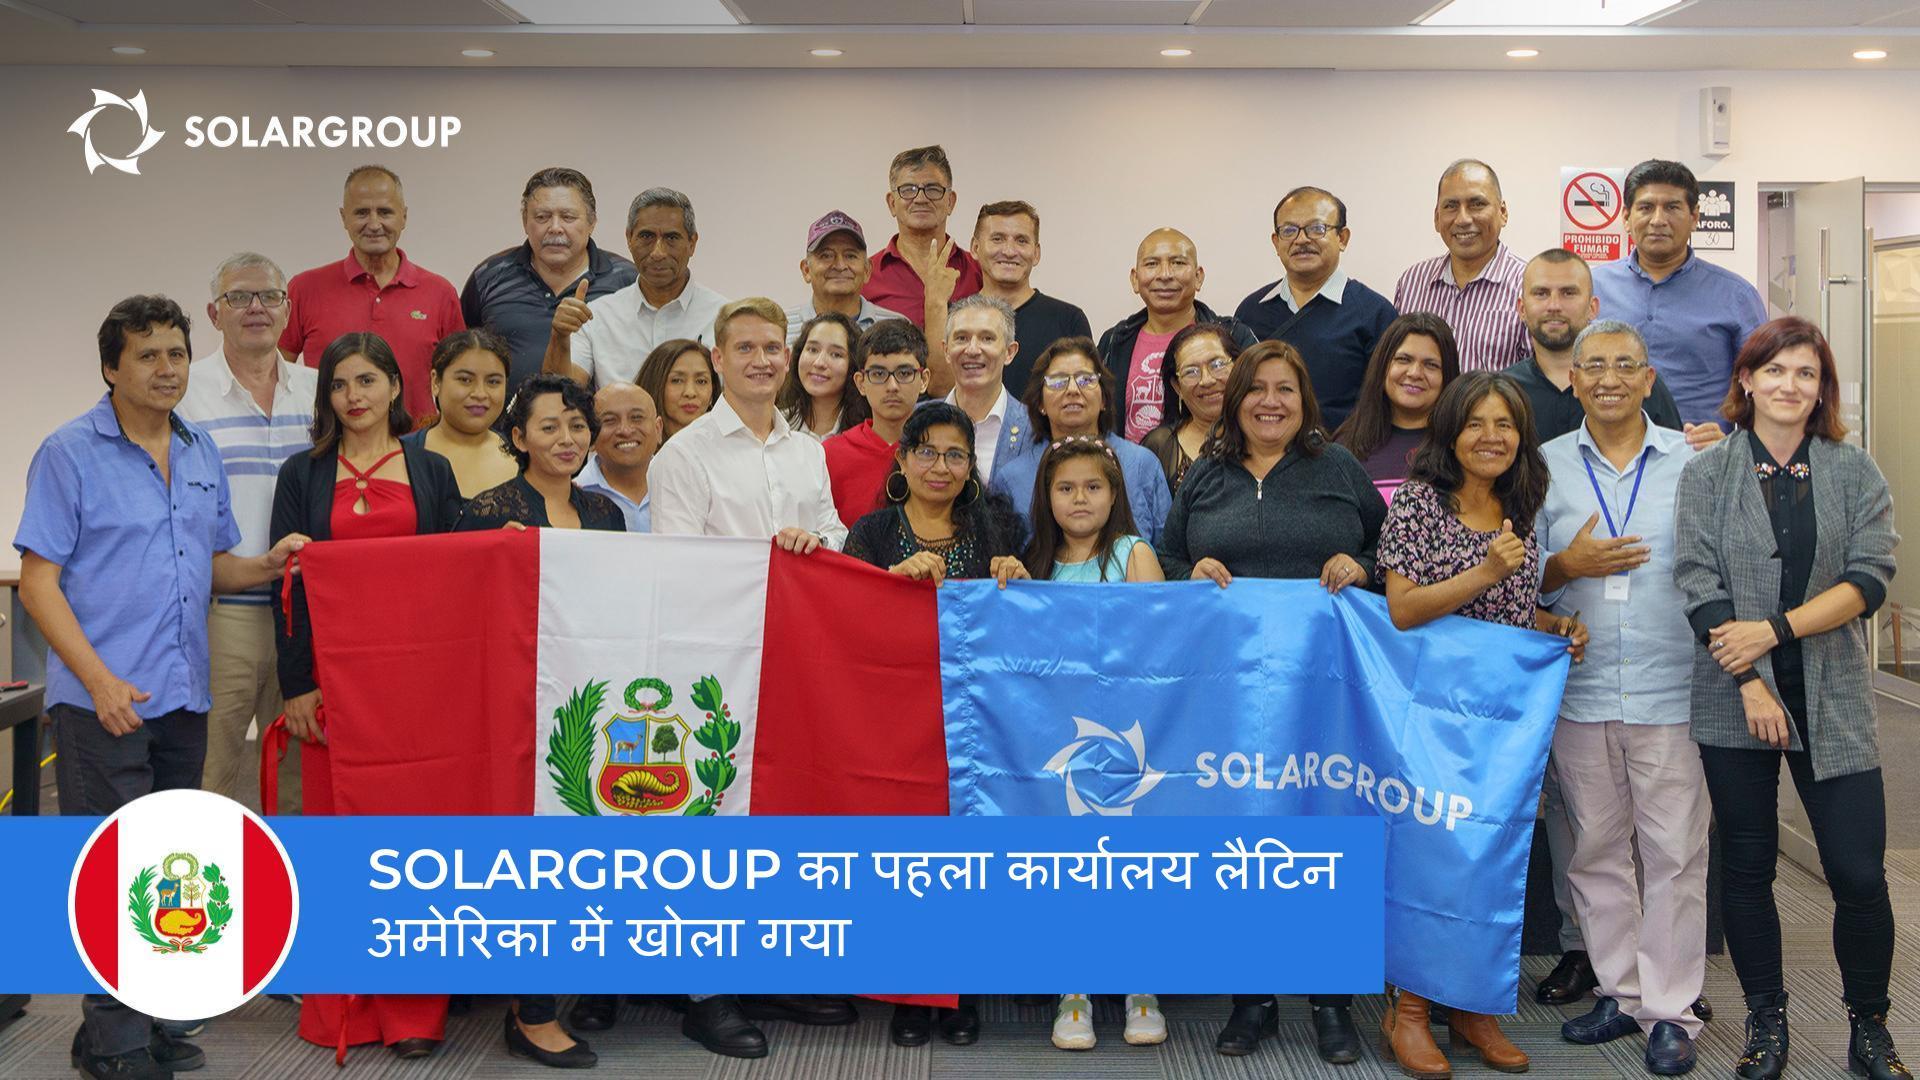 लैटिन अमेरिका में प्रोजेक्ट को विकसित करने के लिए एक नया कदम: SOLARGROUP ने पेरू में अपना कार्यालय खोला